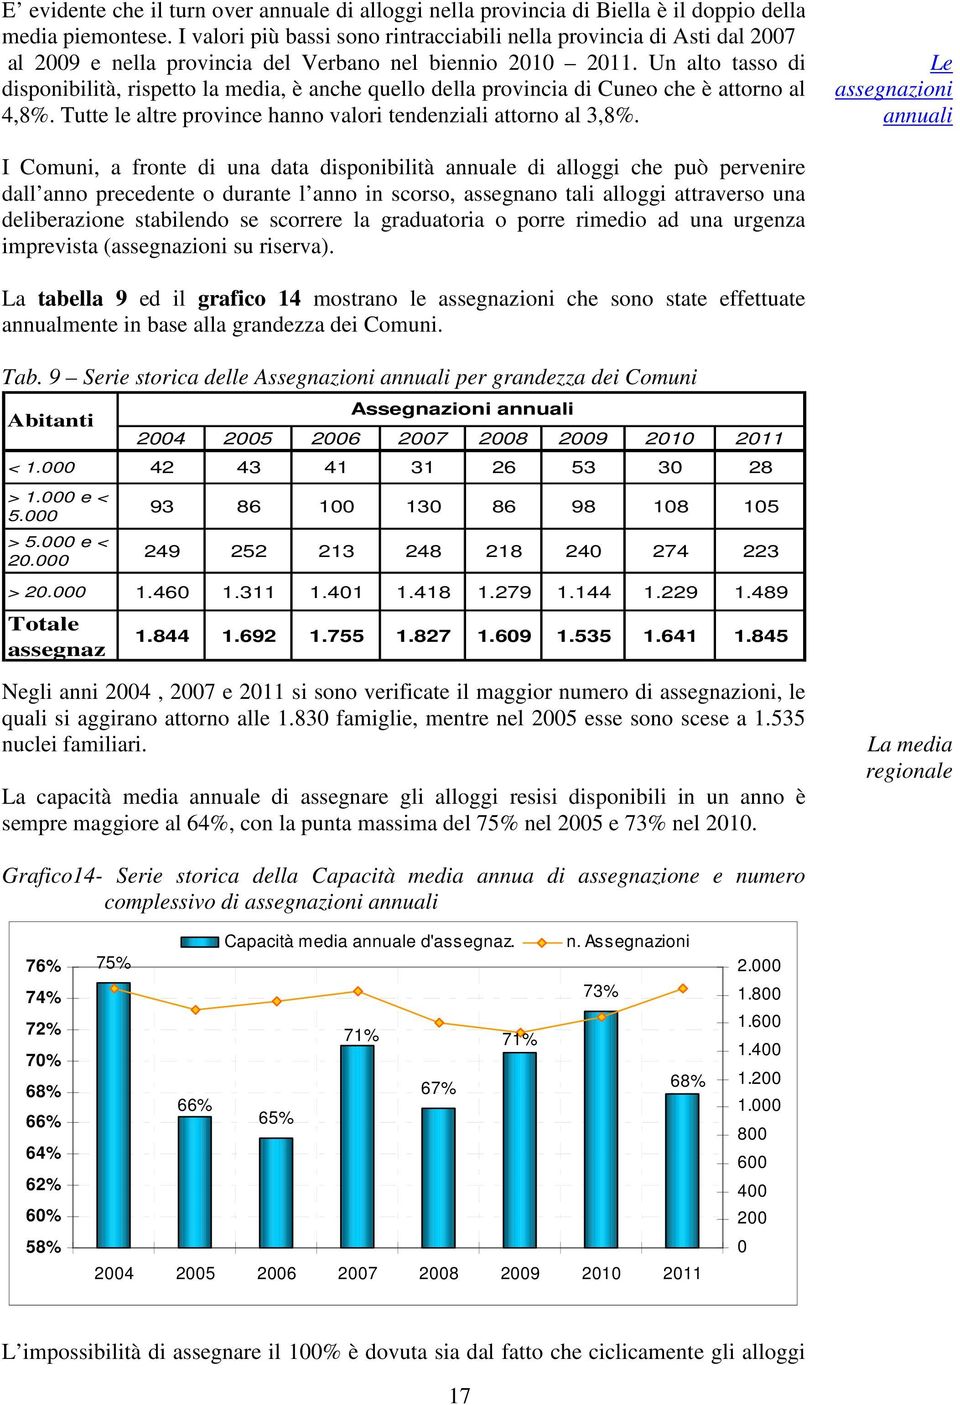 Un alto tasso di disponibilità, rispetto la media, è anche quello della provincia di Cuneo che è attorno al 4,8%. Tutte le altre province hanno valori tendenziali attorno al 3,8%.